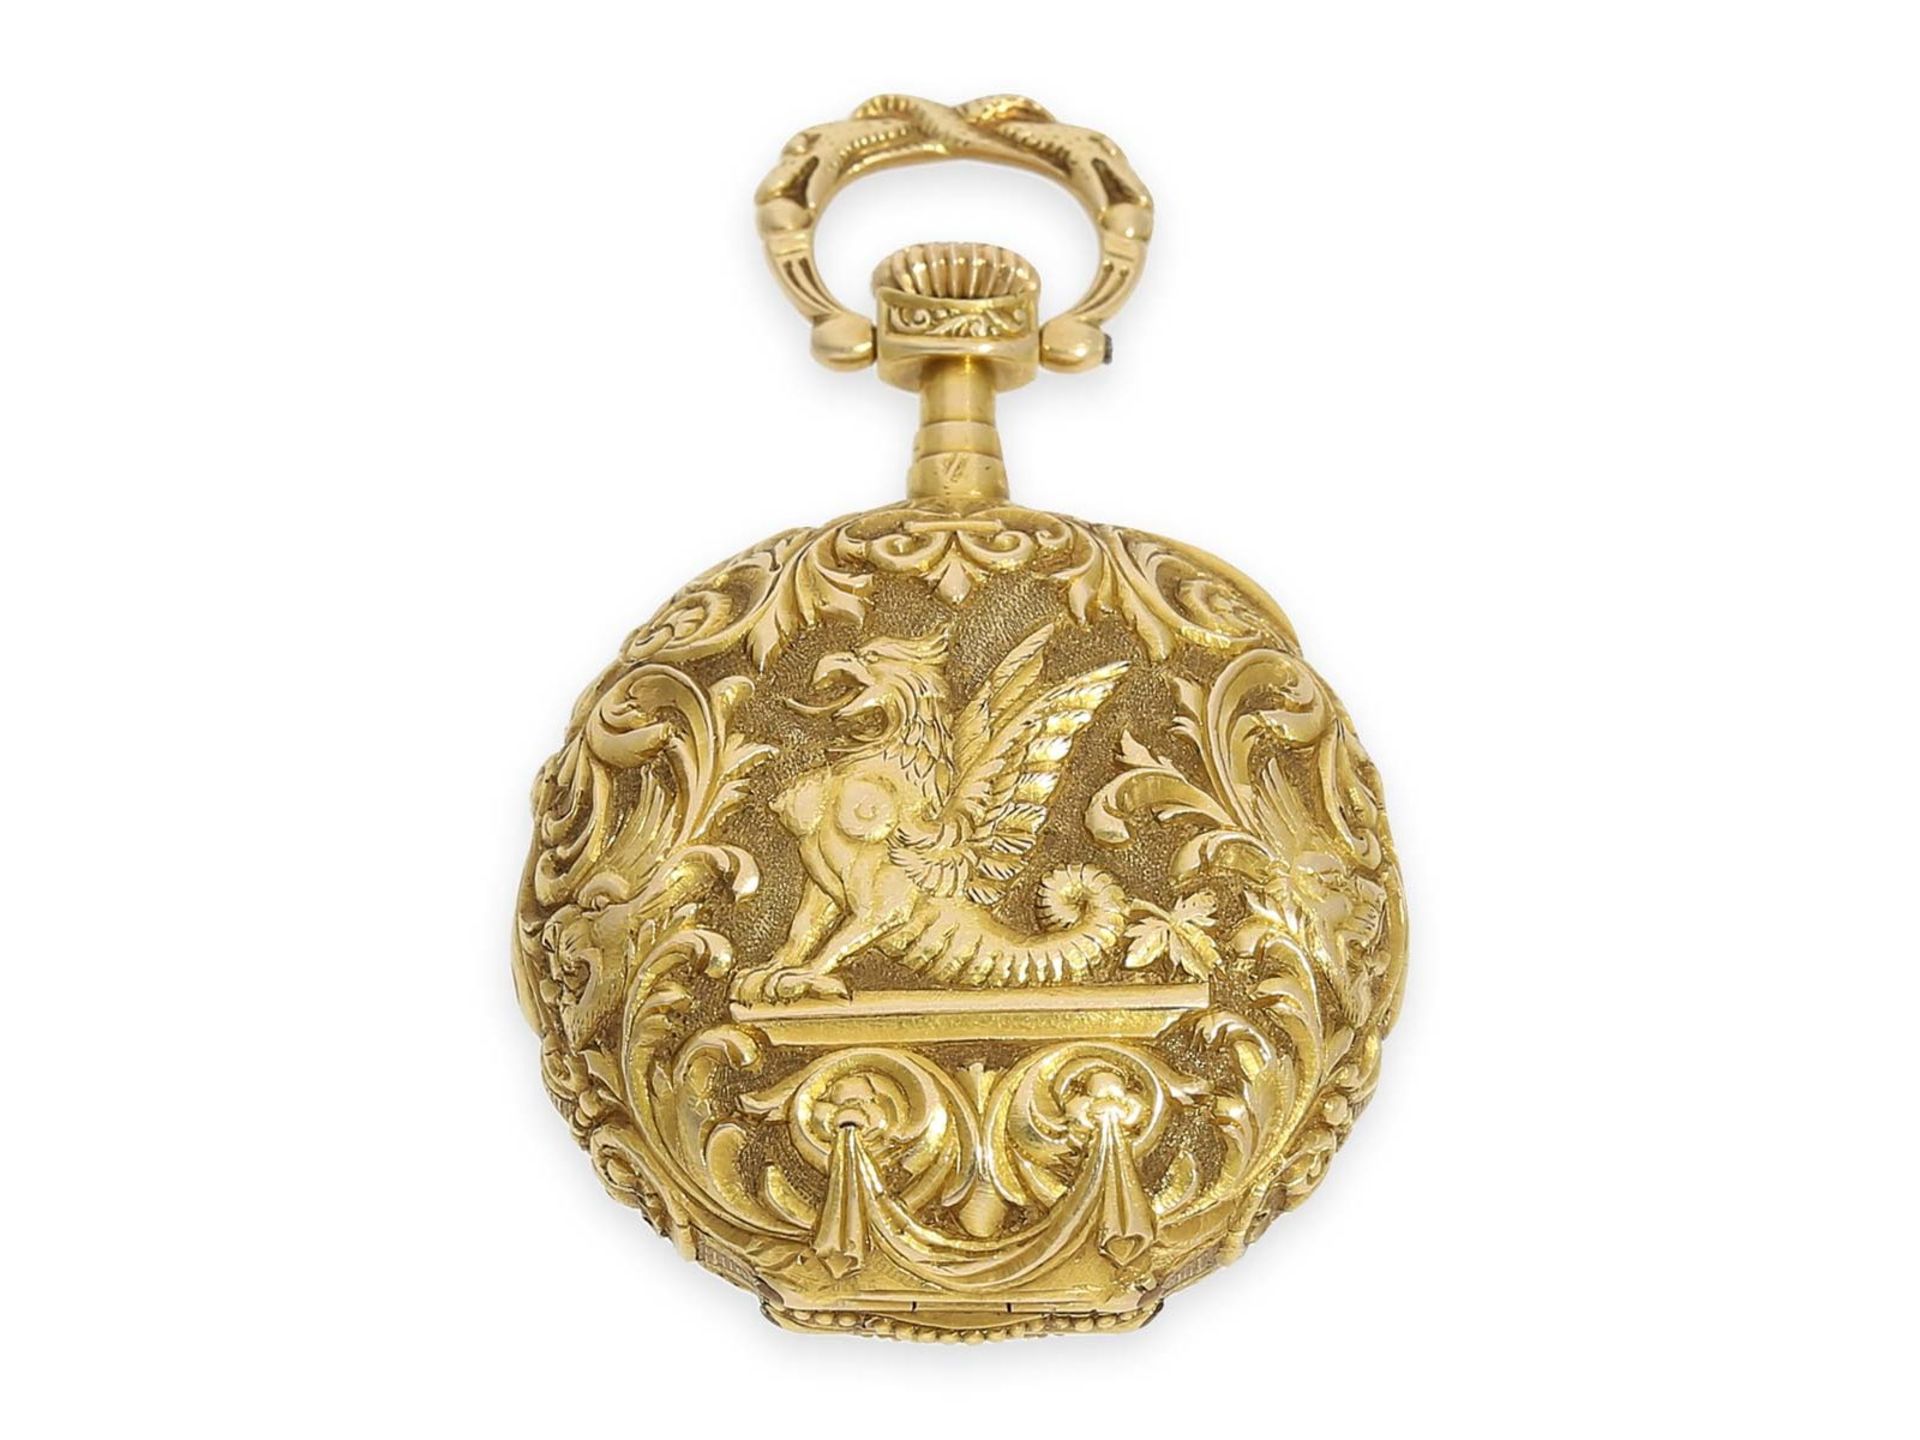 Taschenuhr: extrem rare Omega Damenuhr mit Renaissance-Gehäuse und Zifferblatt aus Guilloche-